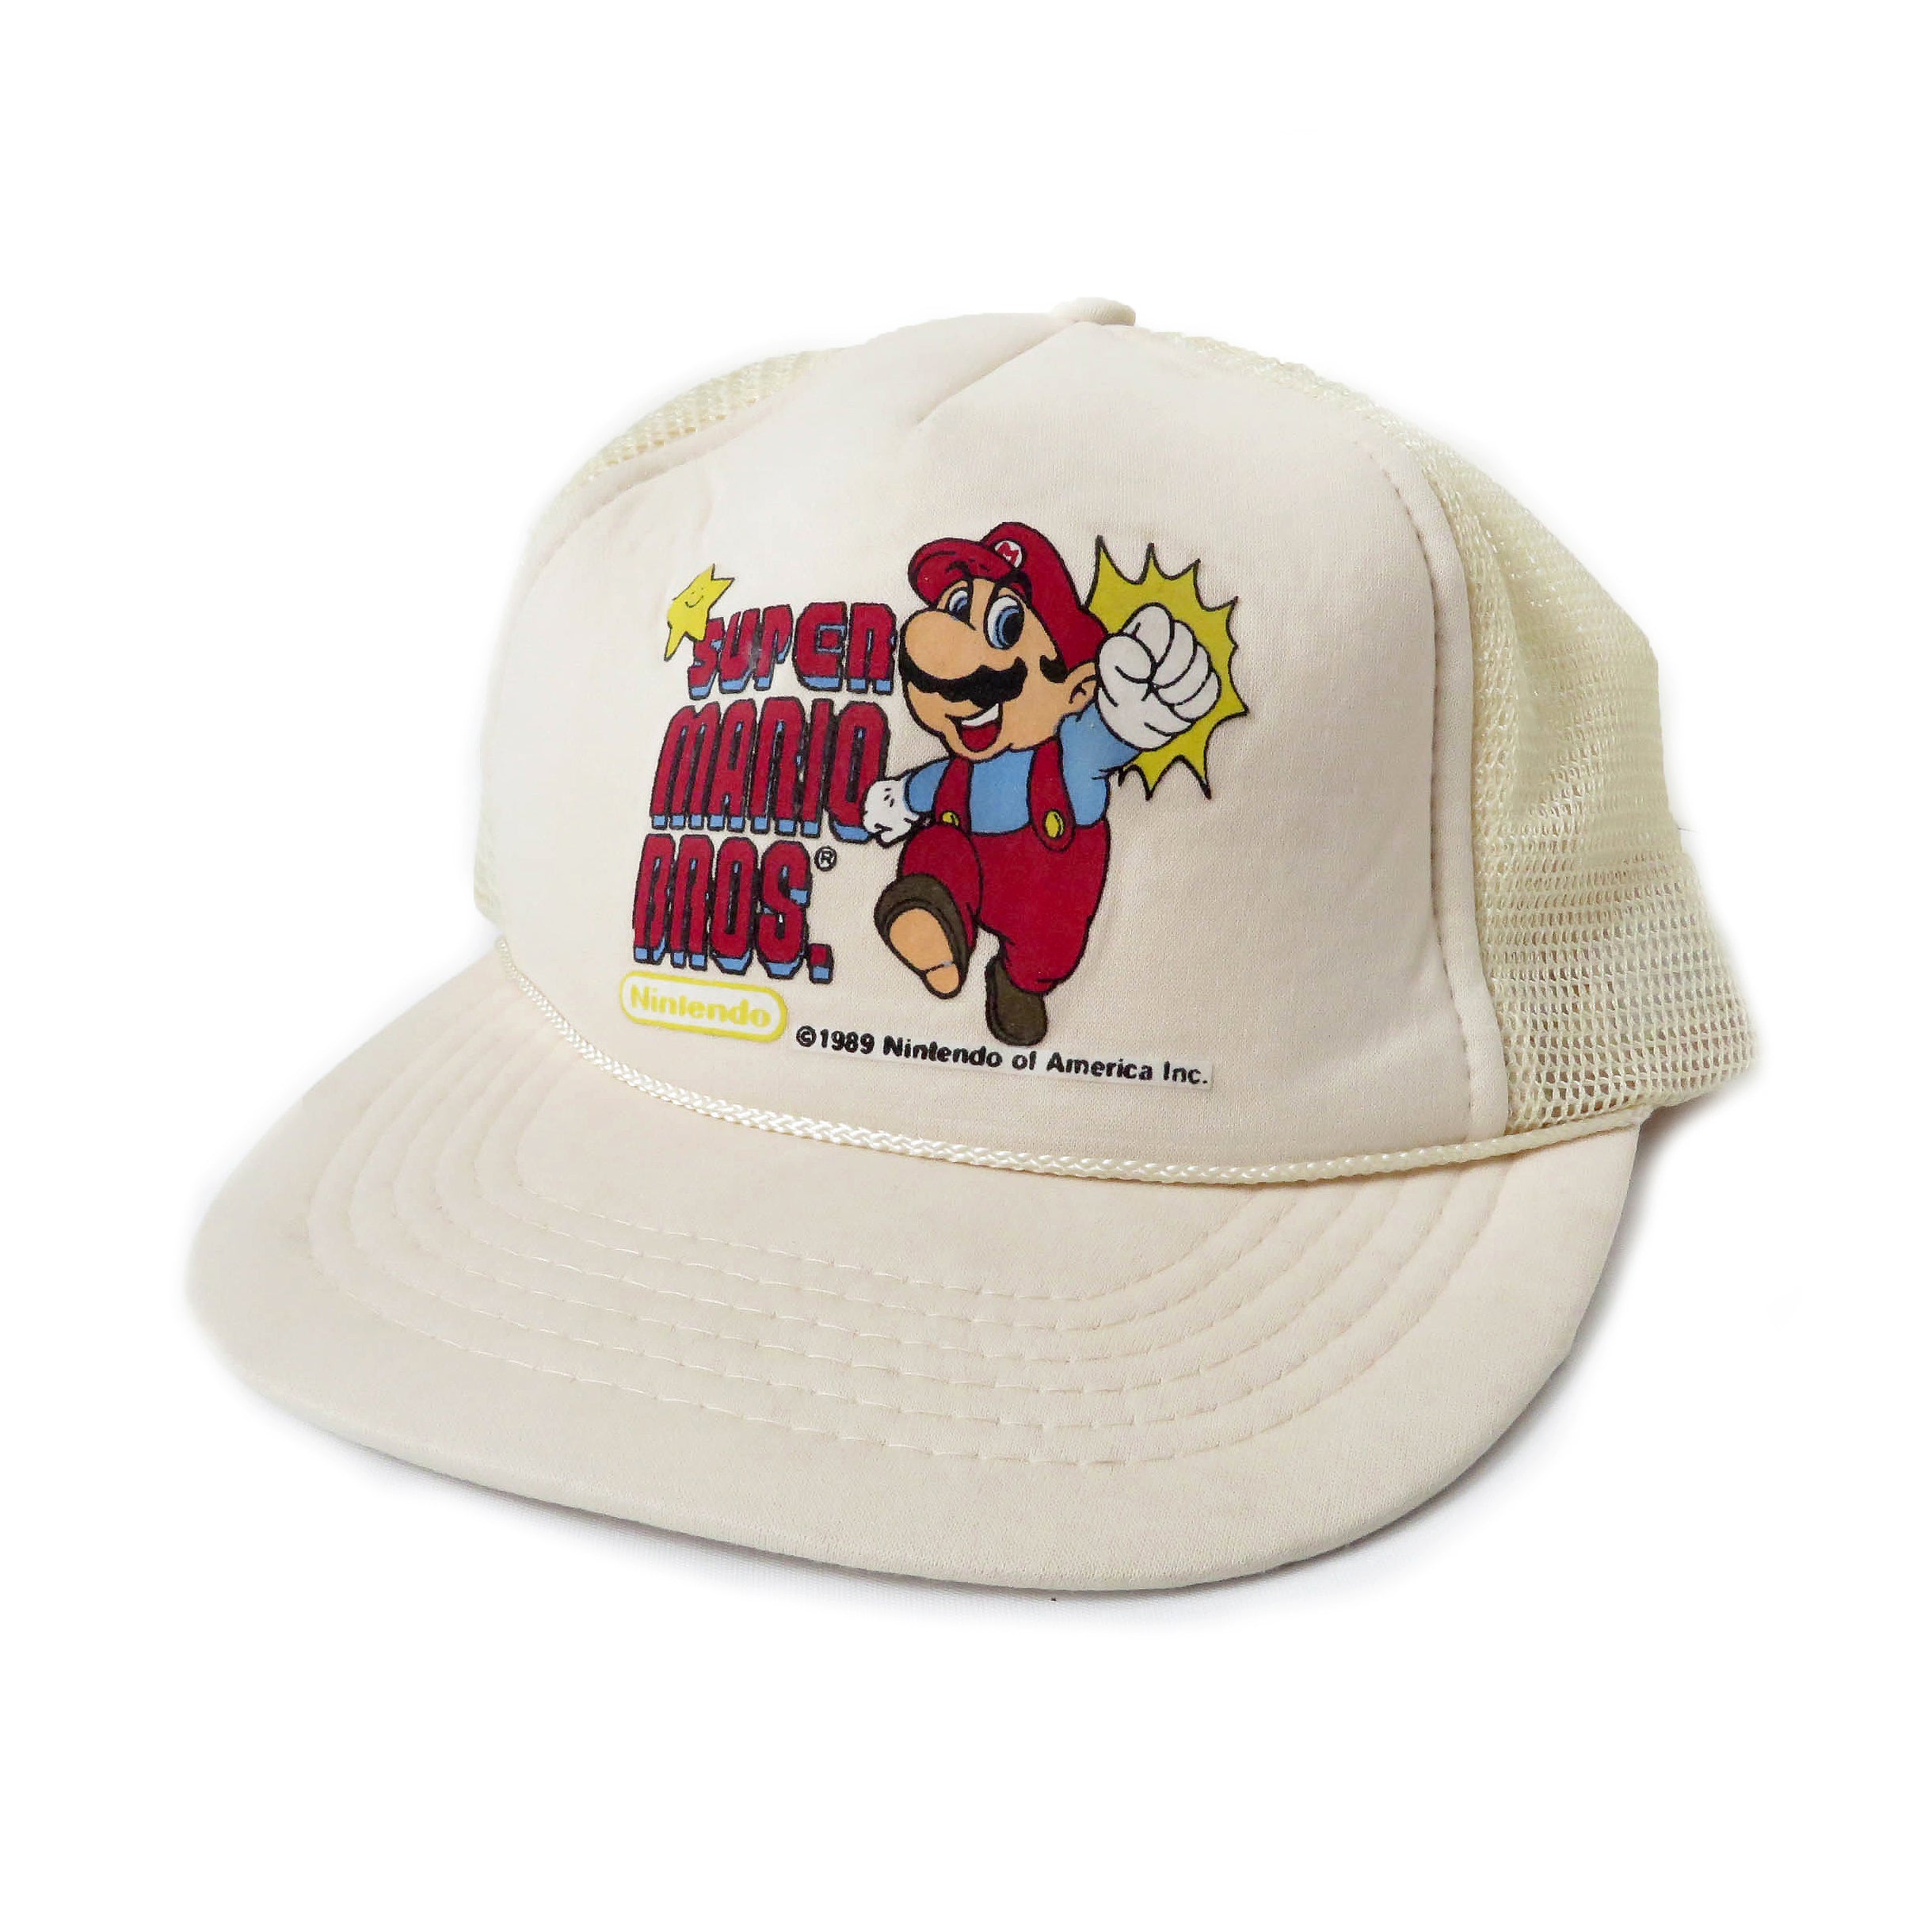 Vintage 1989 Nintendo Super Mario Bros Snapback Hat